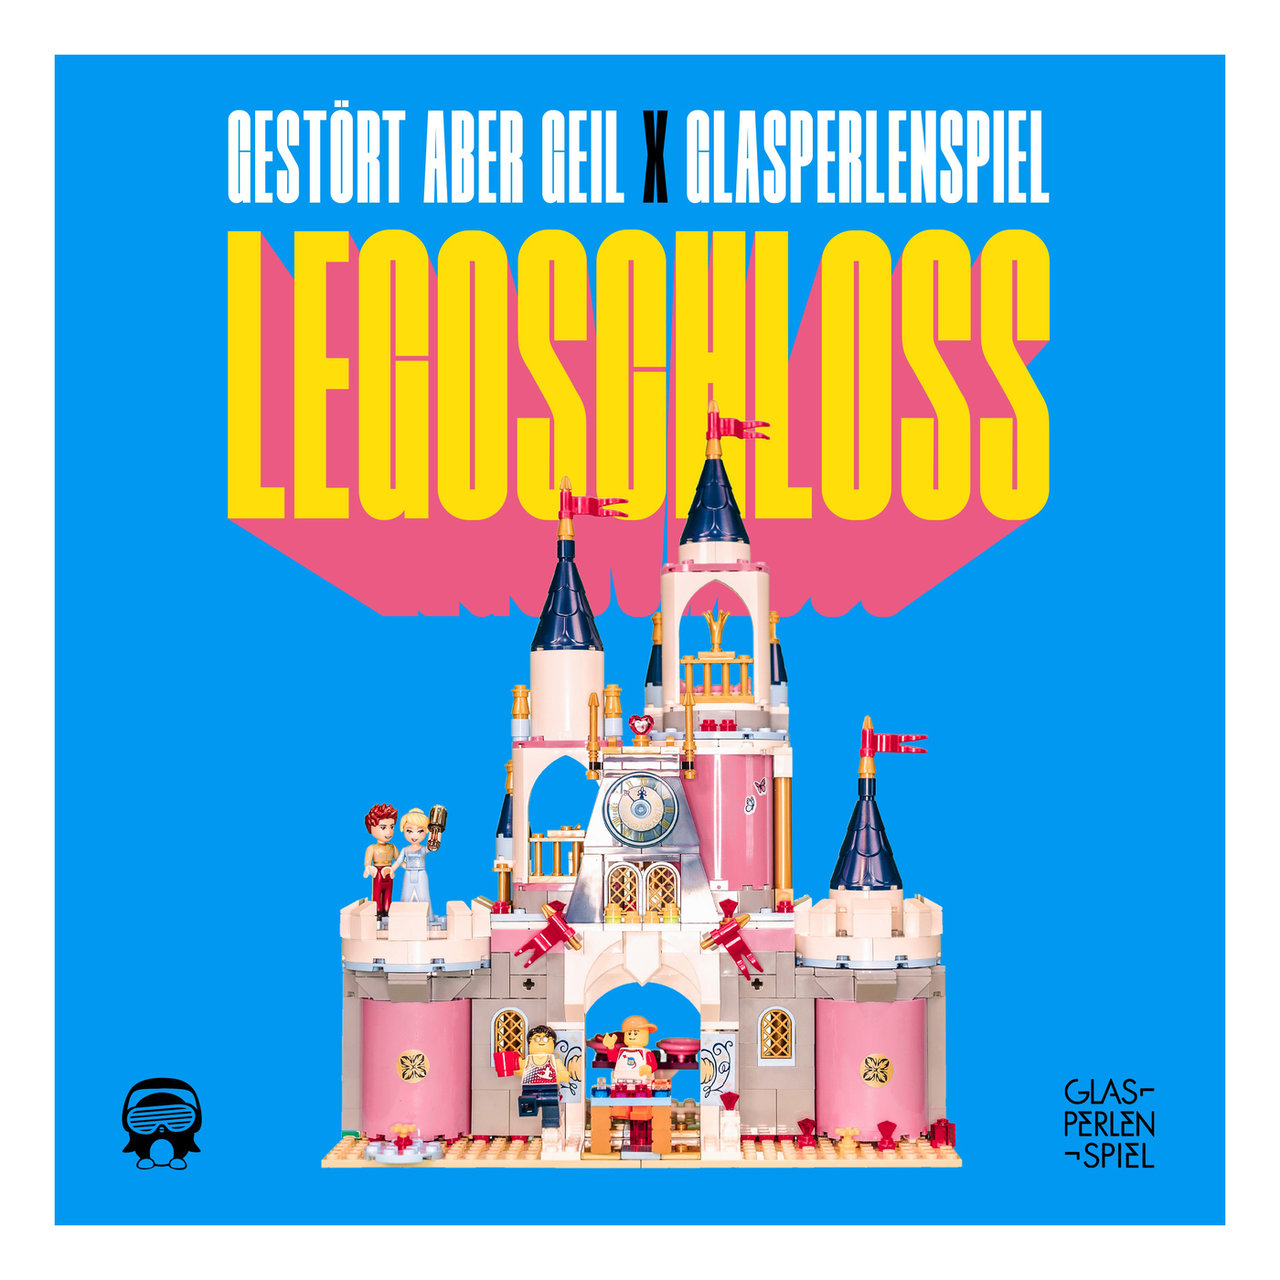 Glasperlenspiel ft. featuring Gestört aber GeiL Legoschloss cover artwork